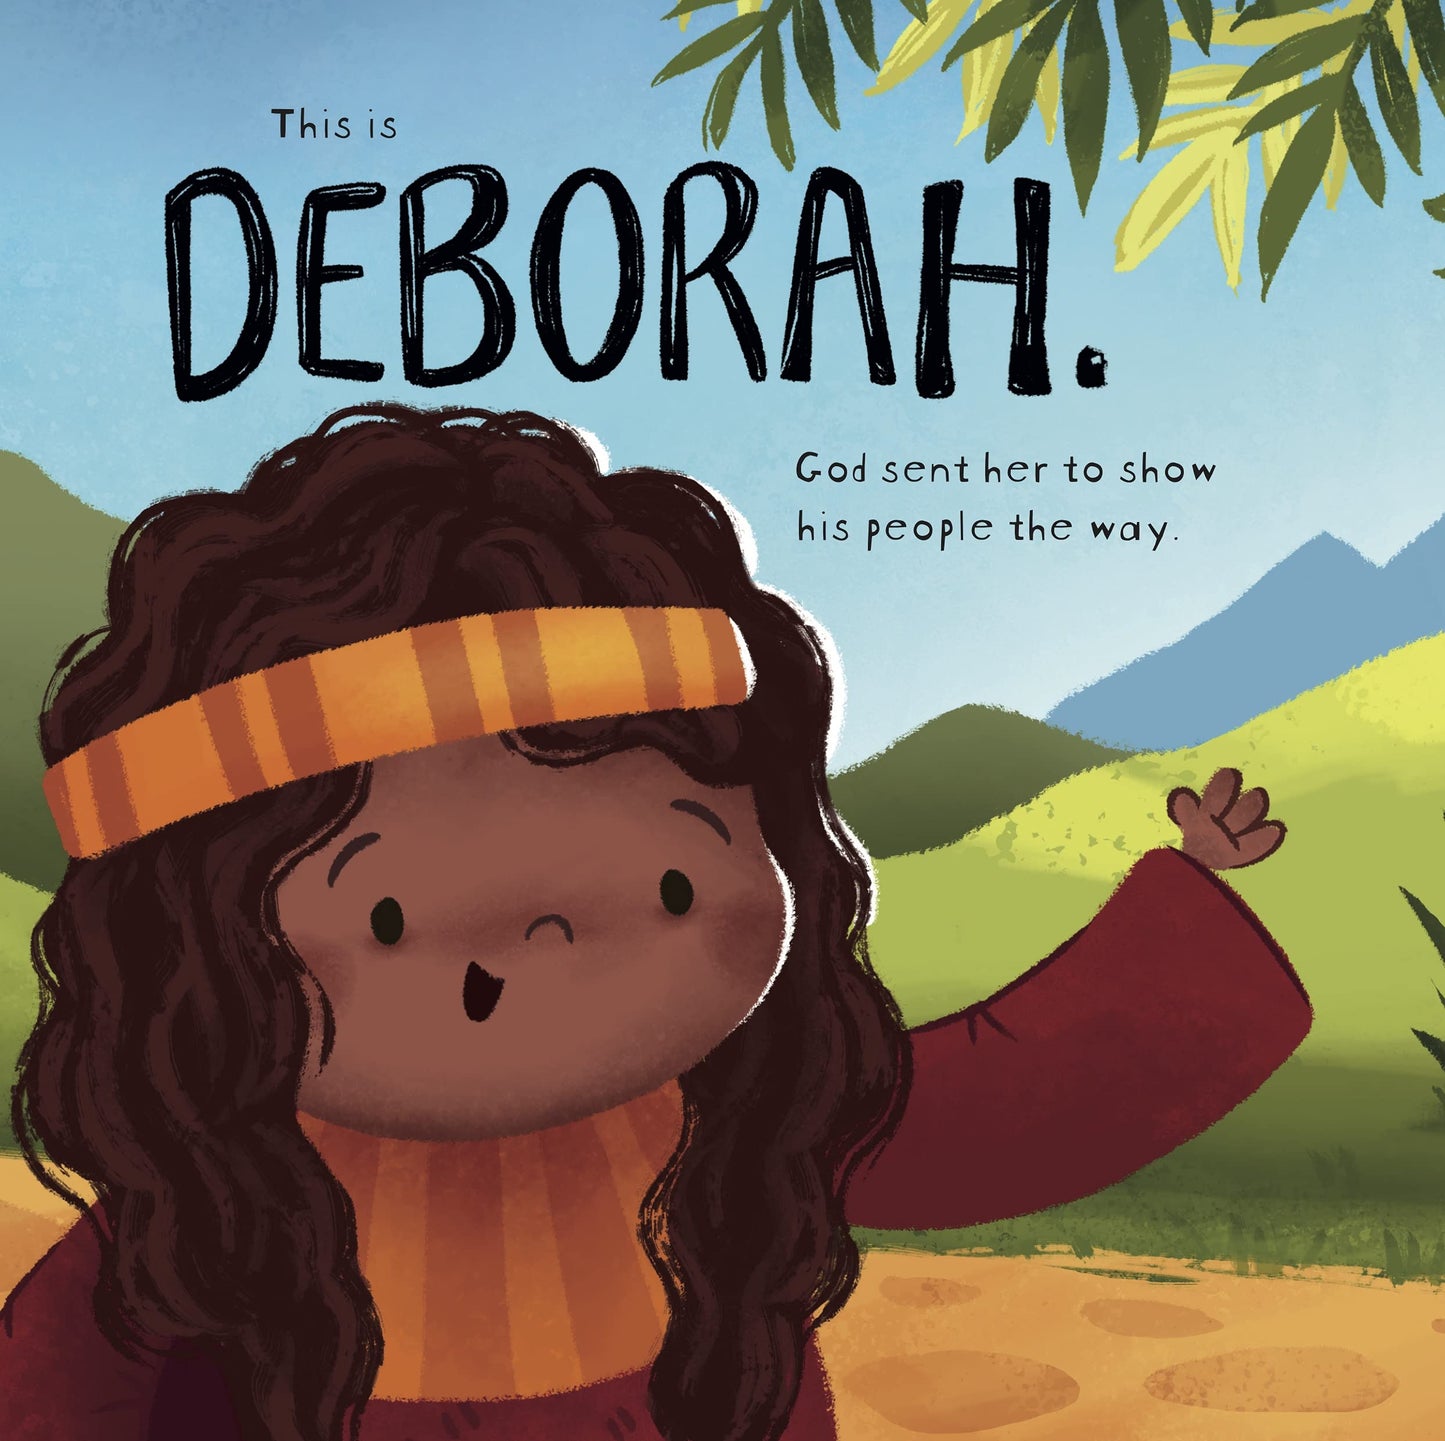 Deborah and the Very Big Battle (Very Best Bible Stories)